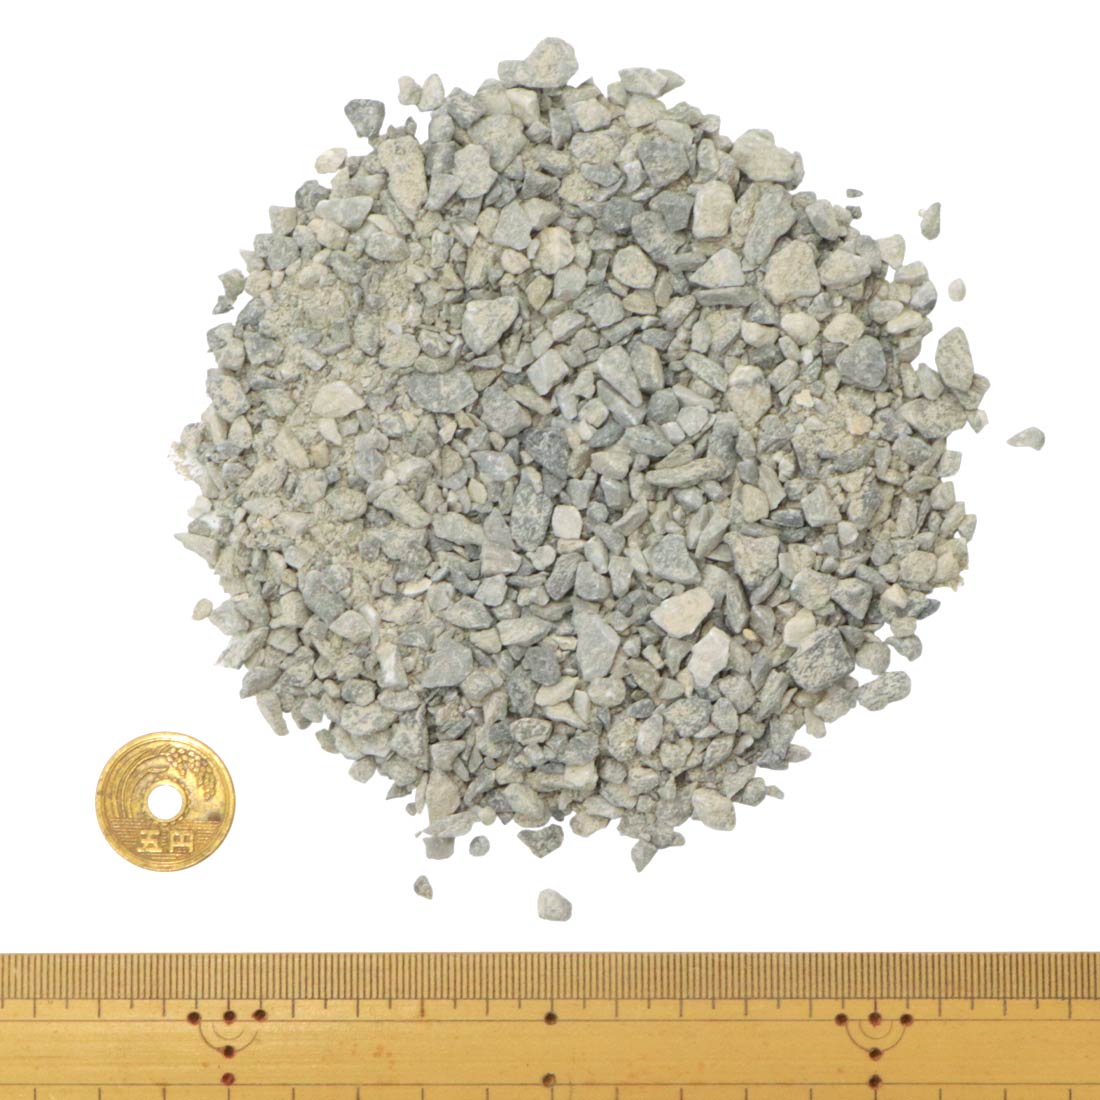 ミックスカラー砕石 0-5mm 20kg